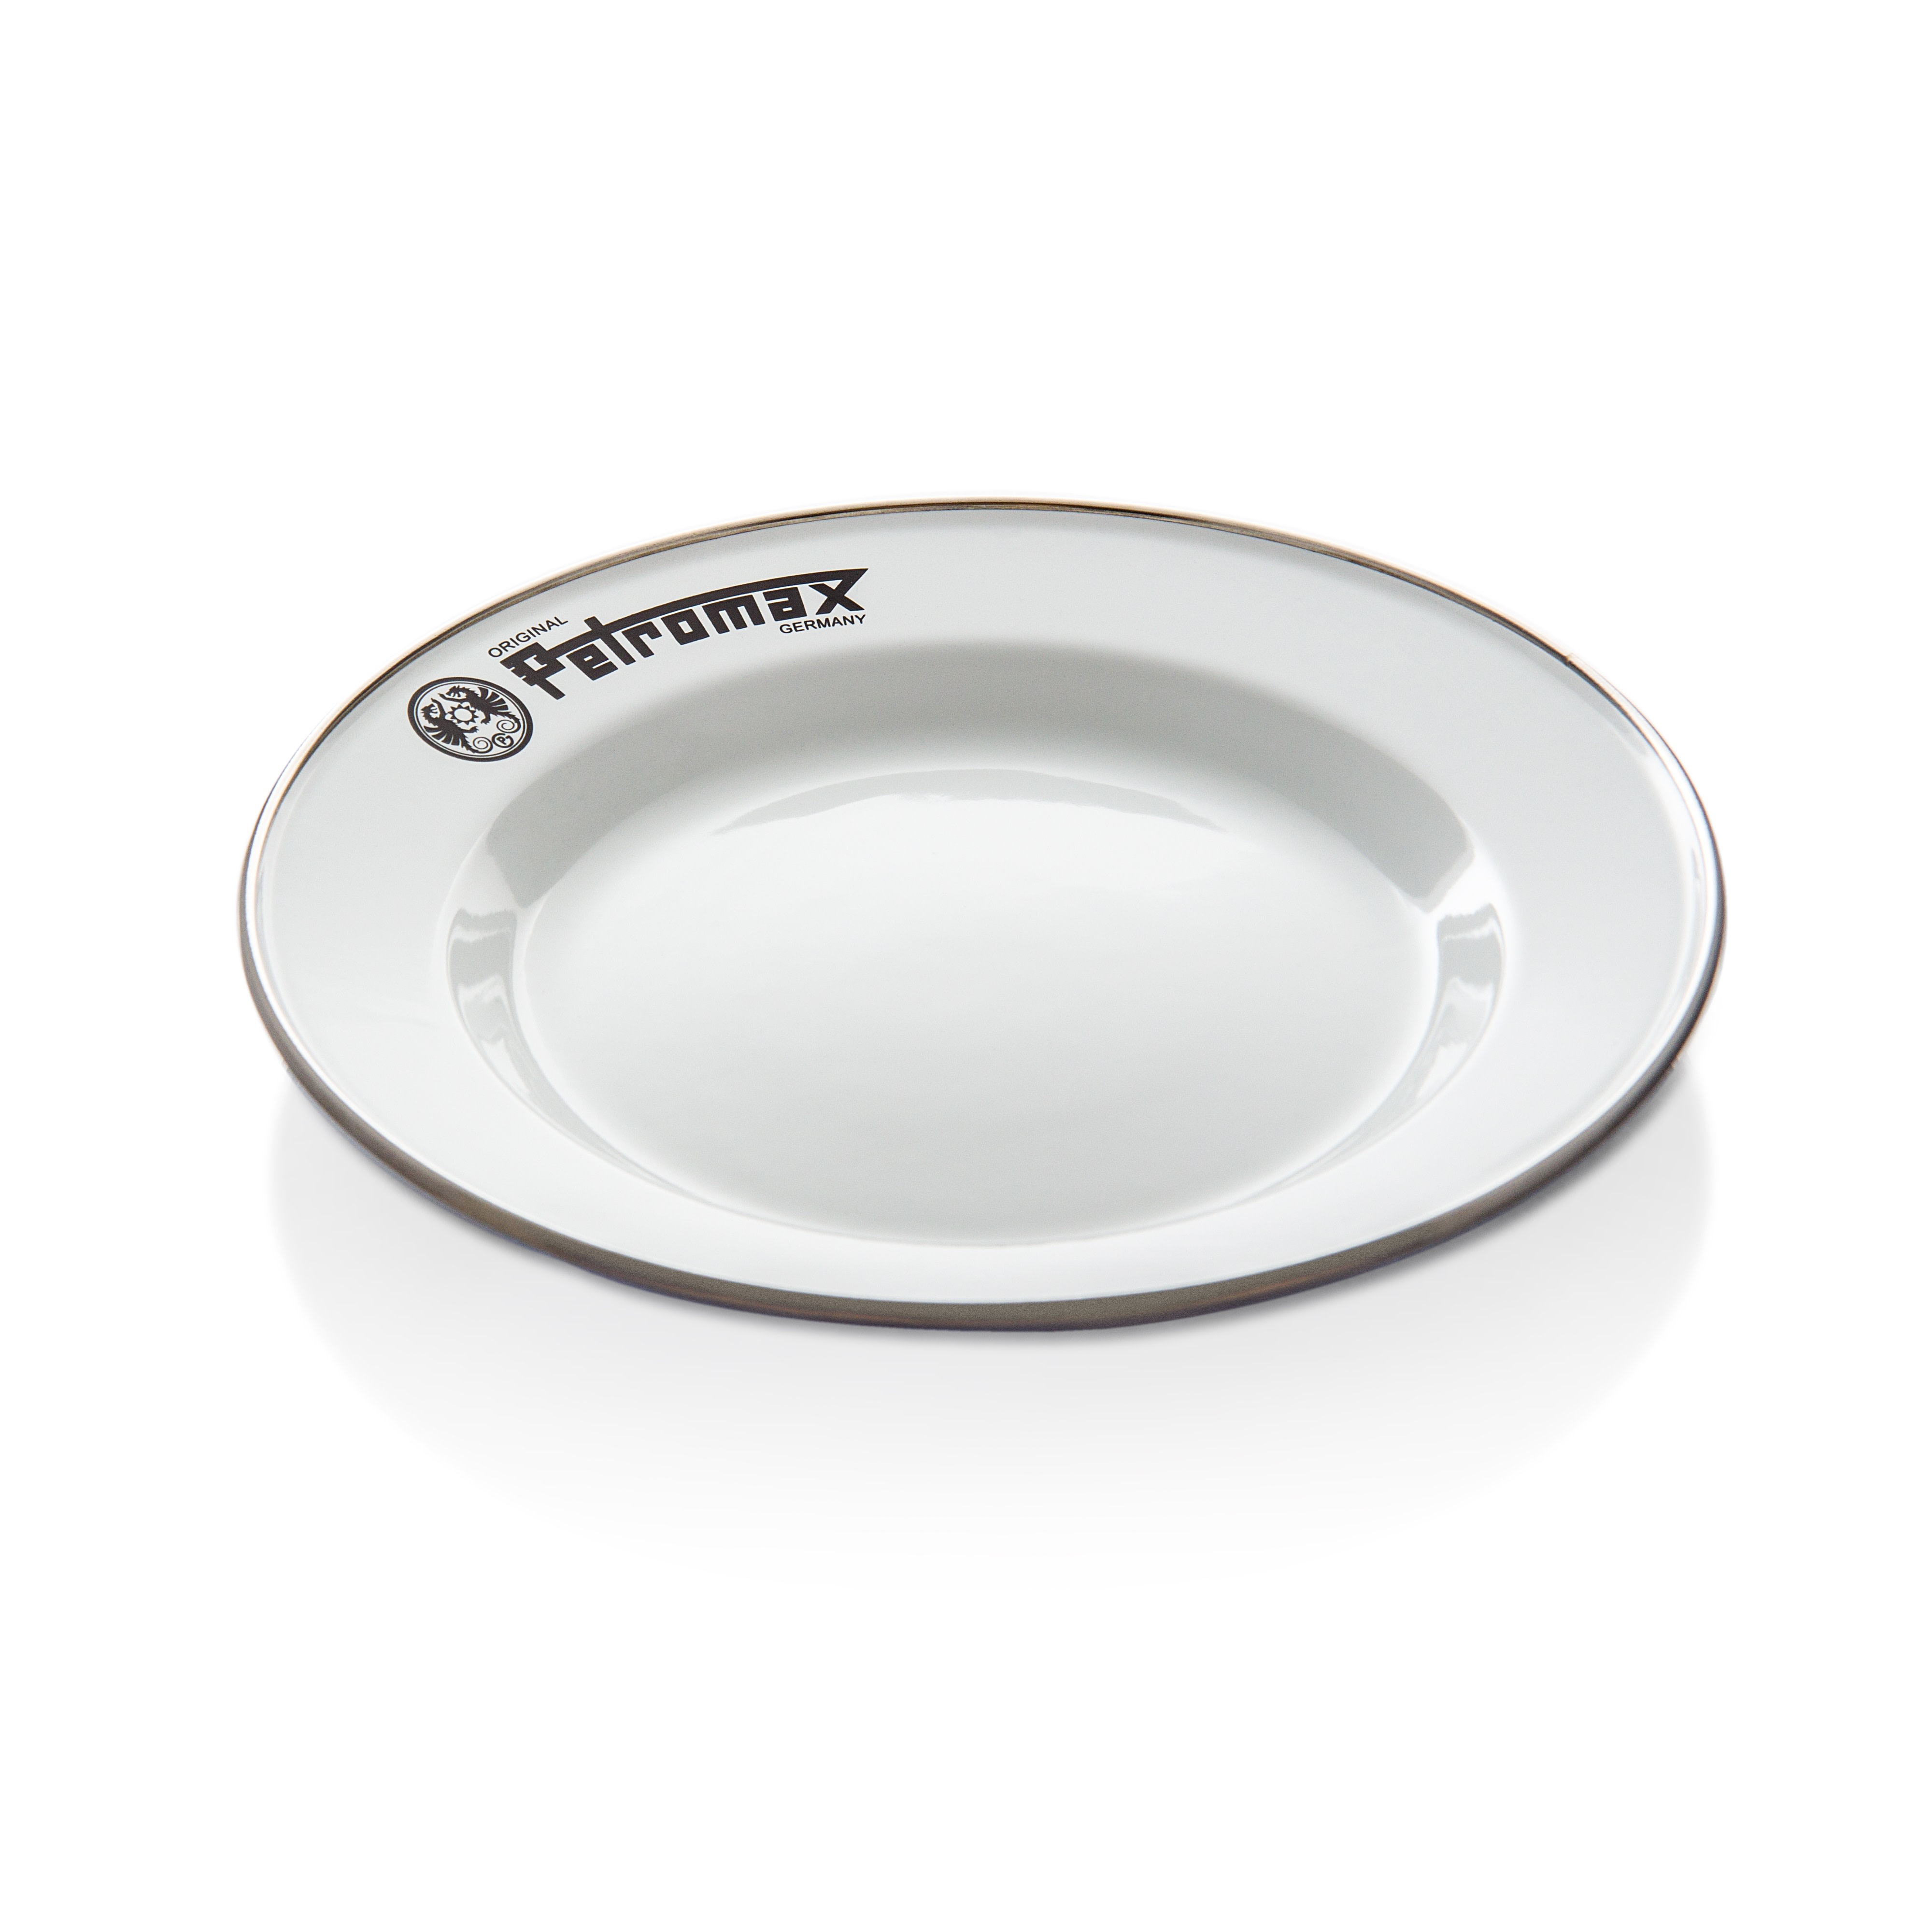 Petromax Enamel Plates 2 Piece White